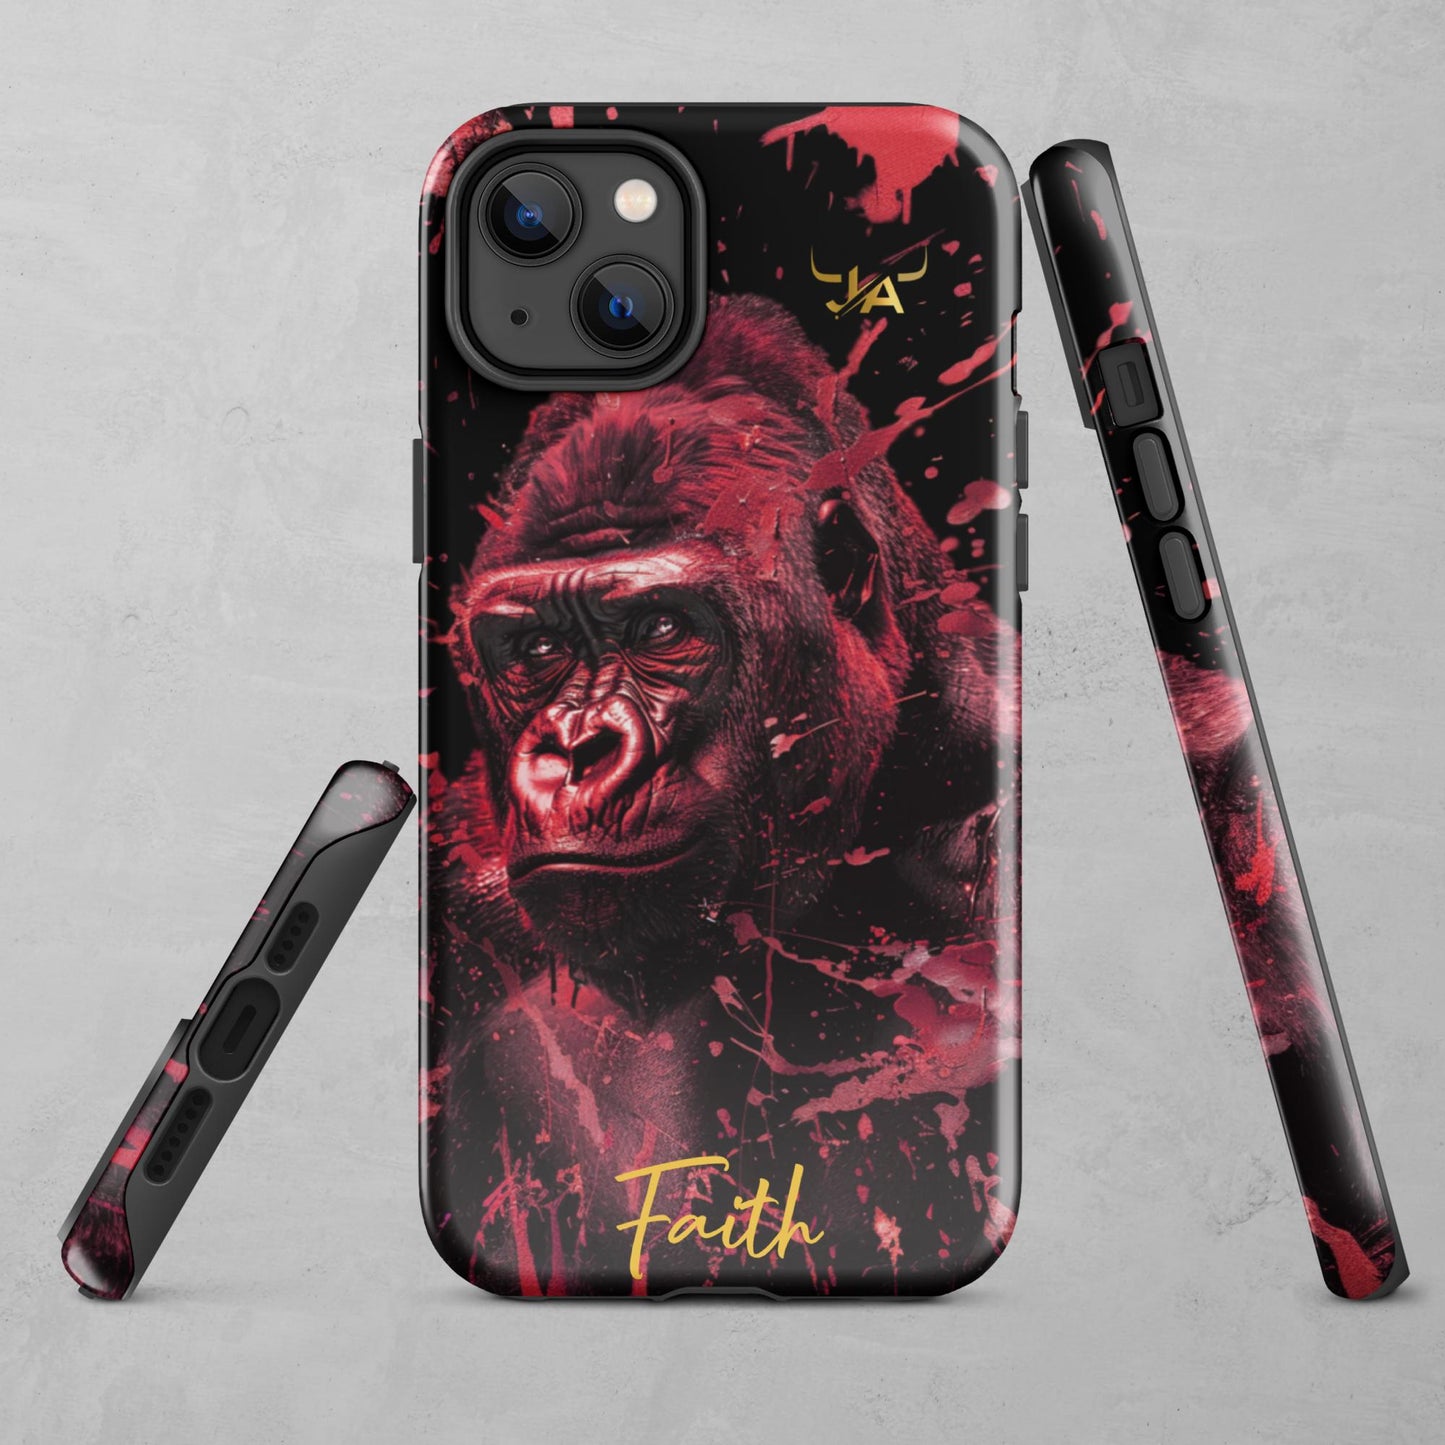 J.A Faith Red Gorilla Tough Case for iPhone®